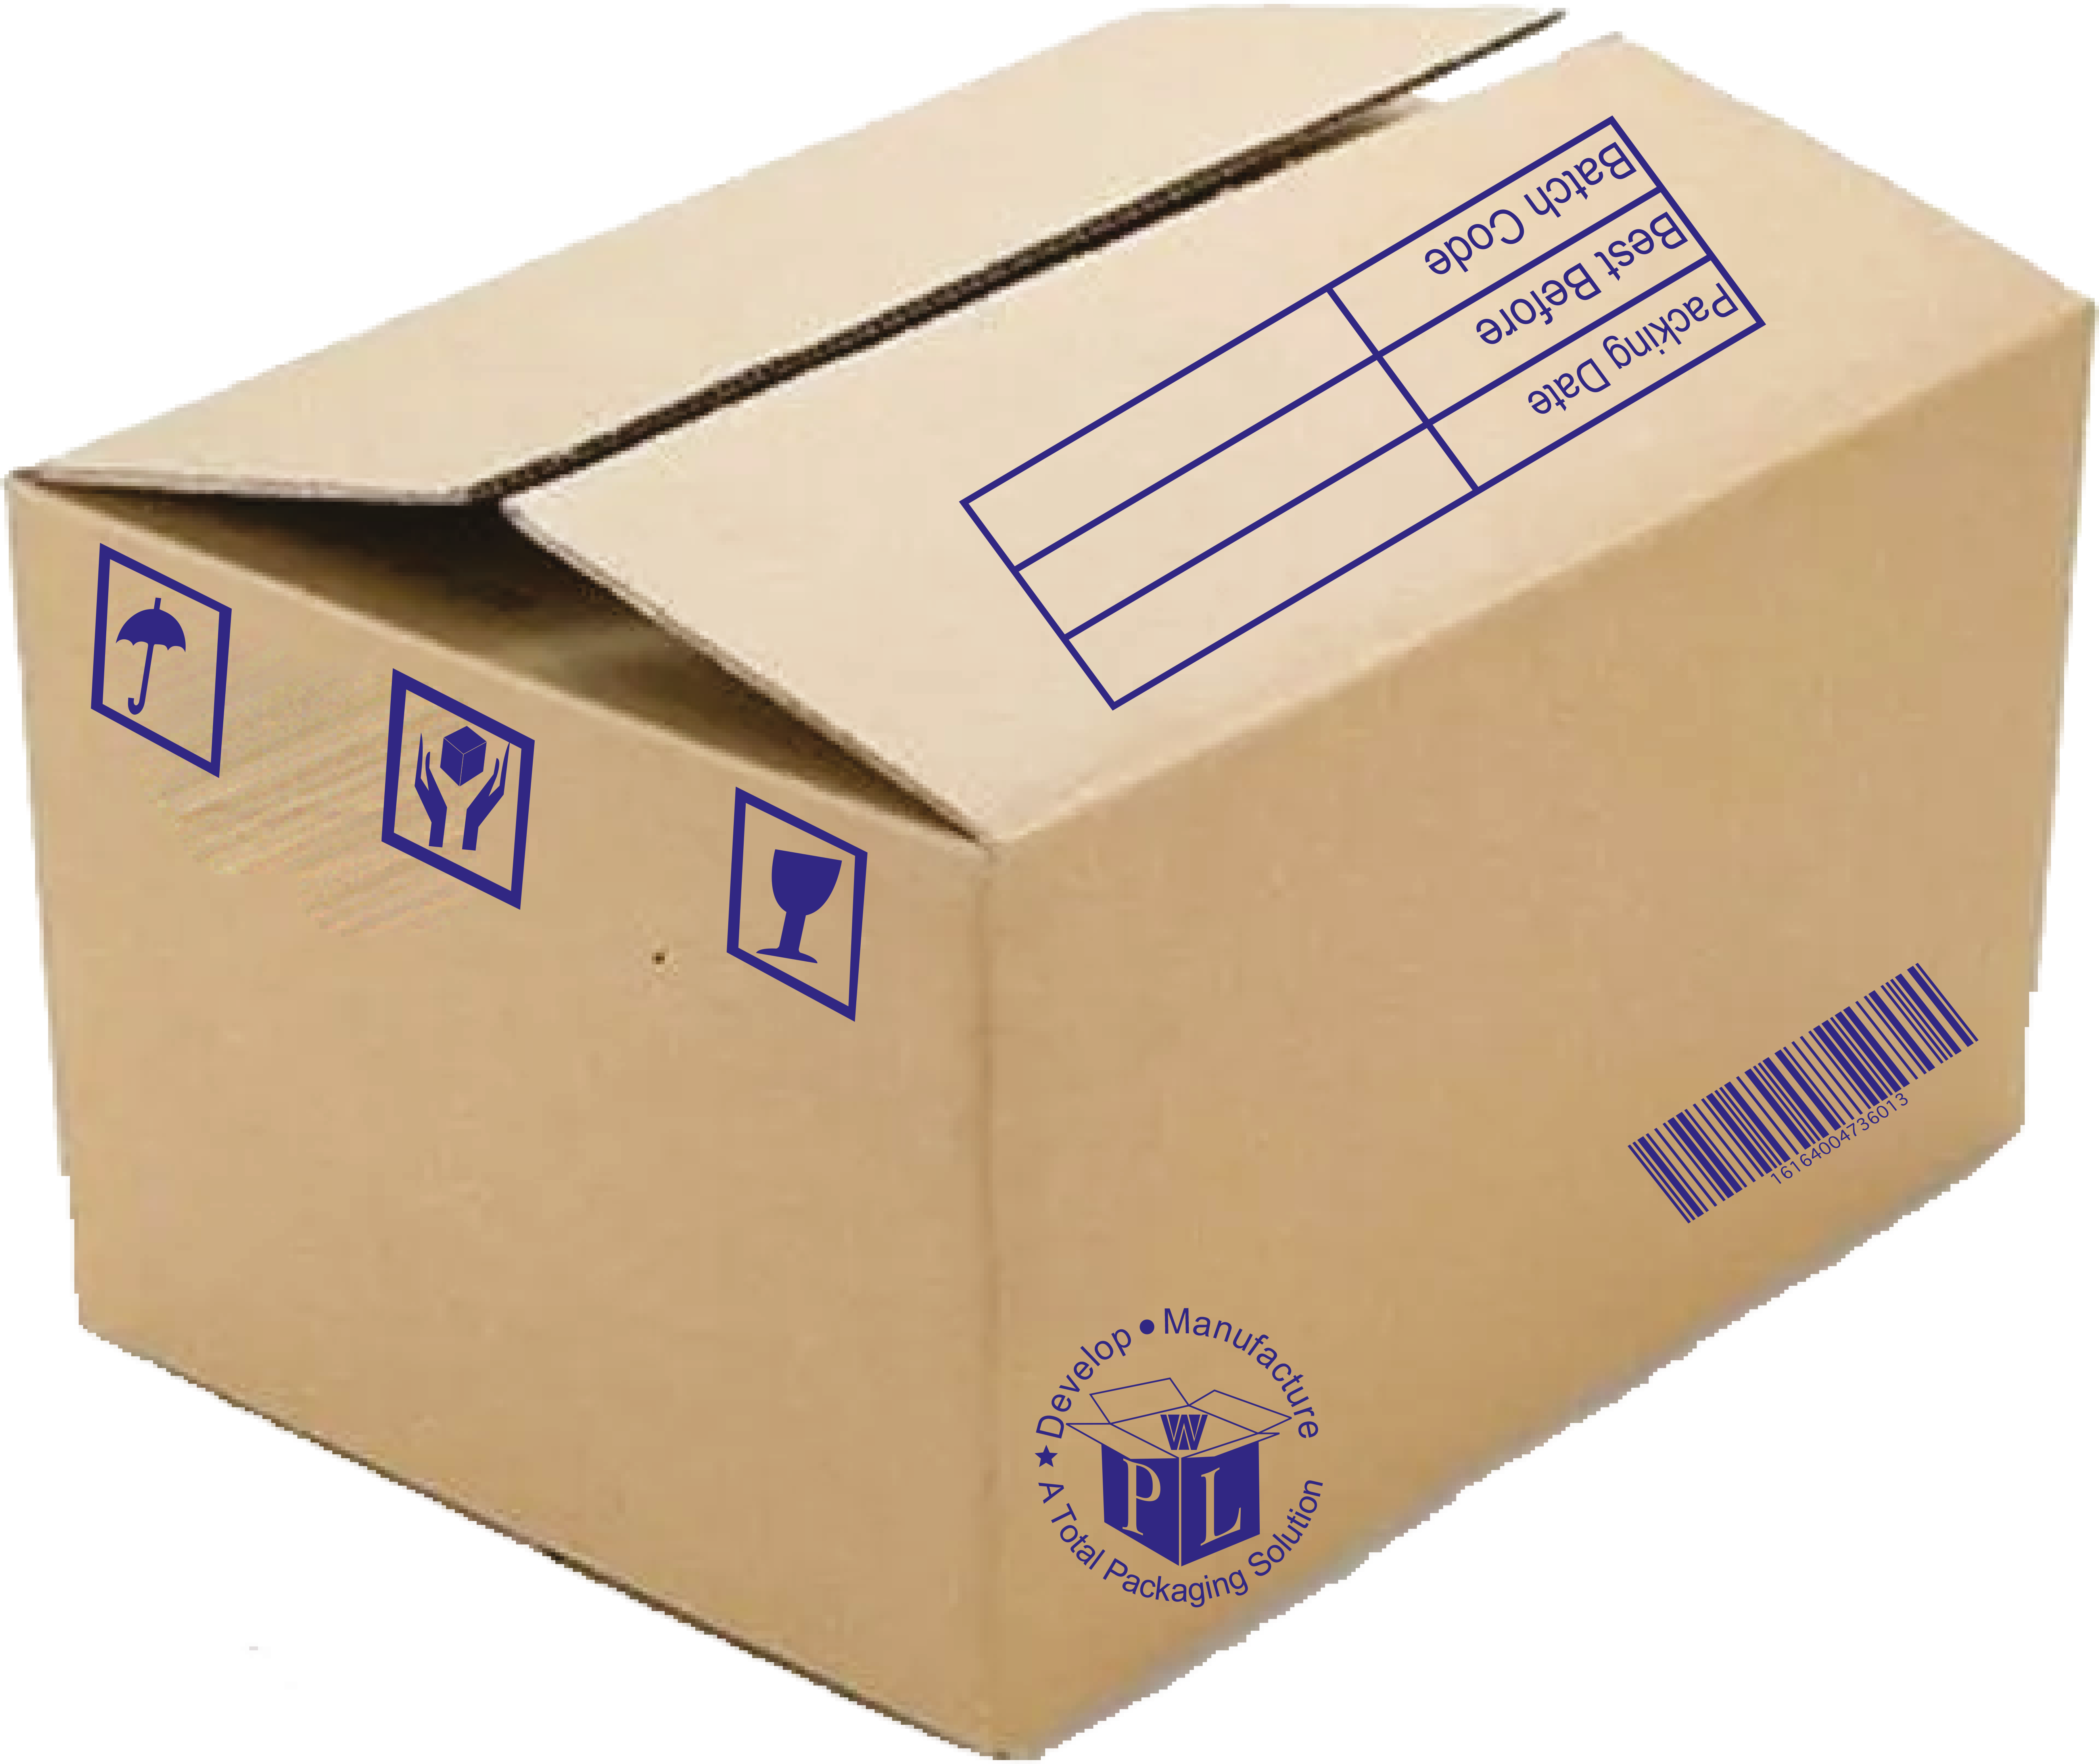 Archive Boxes  Carton Manufacturers Ltd